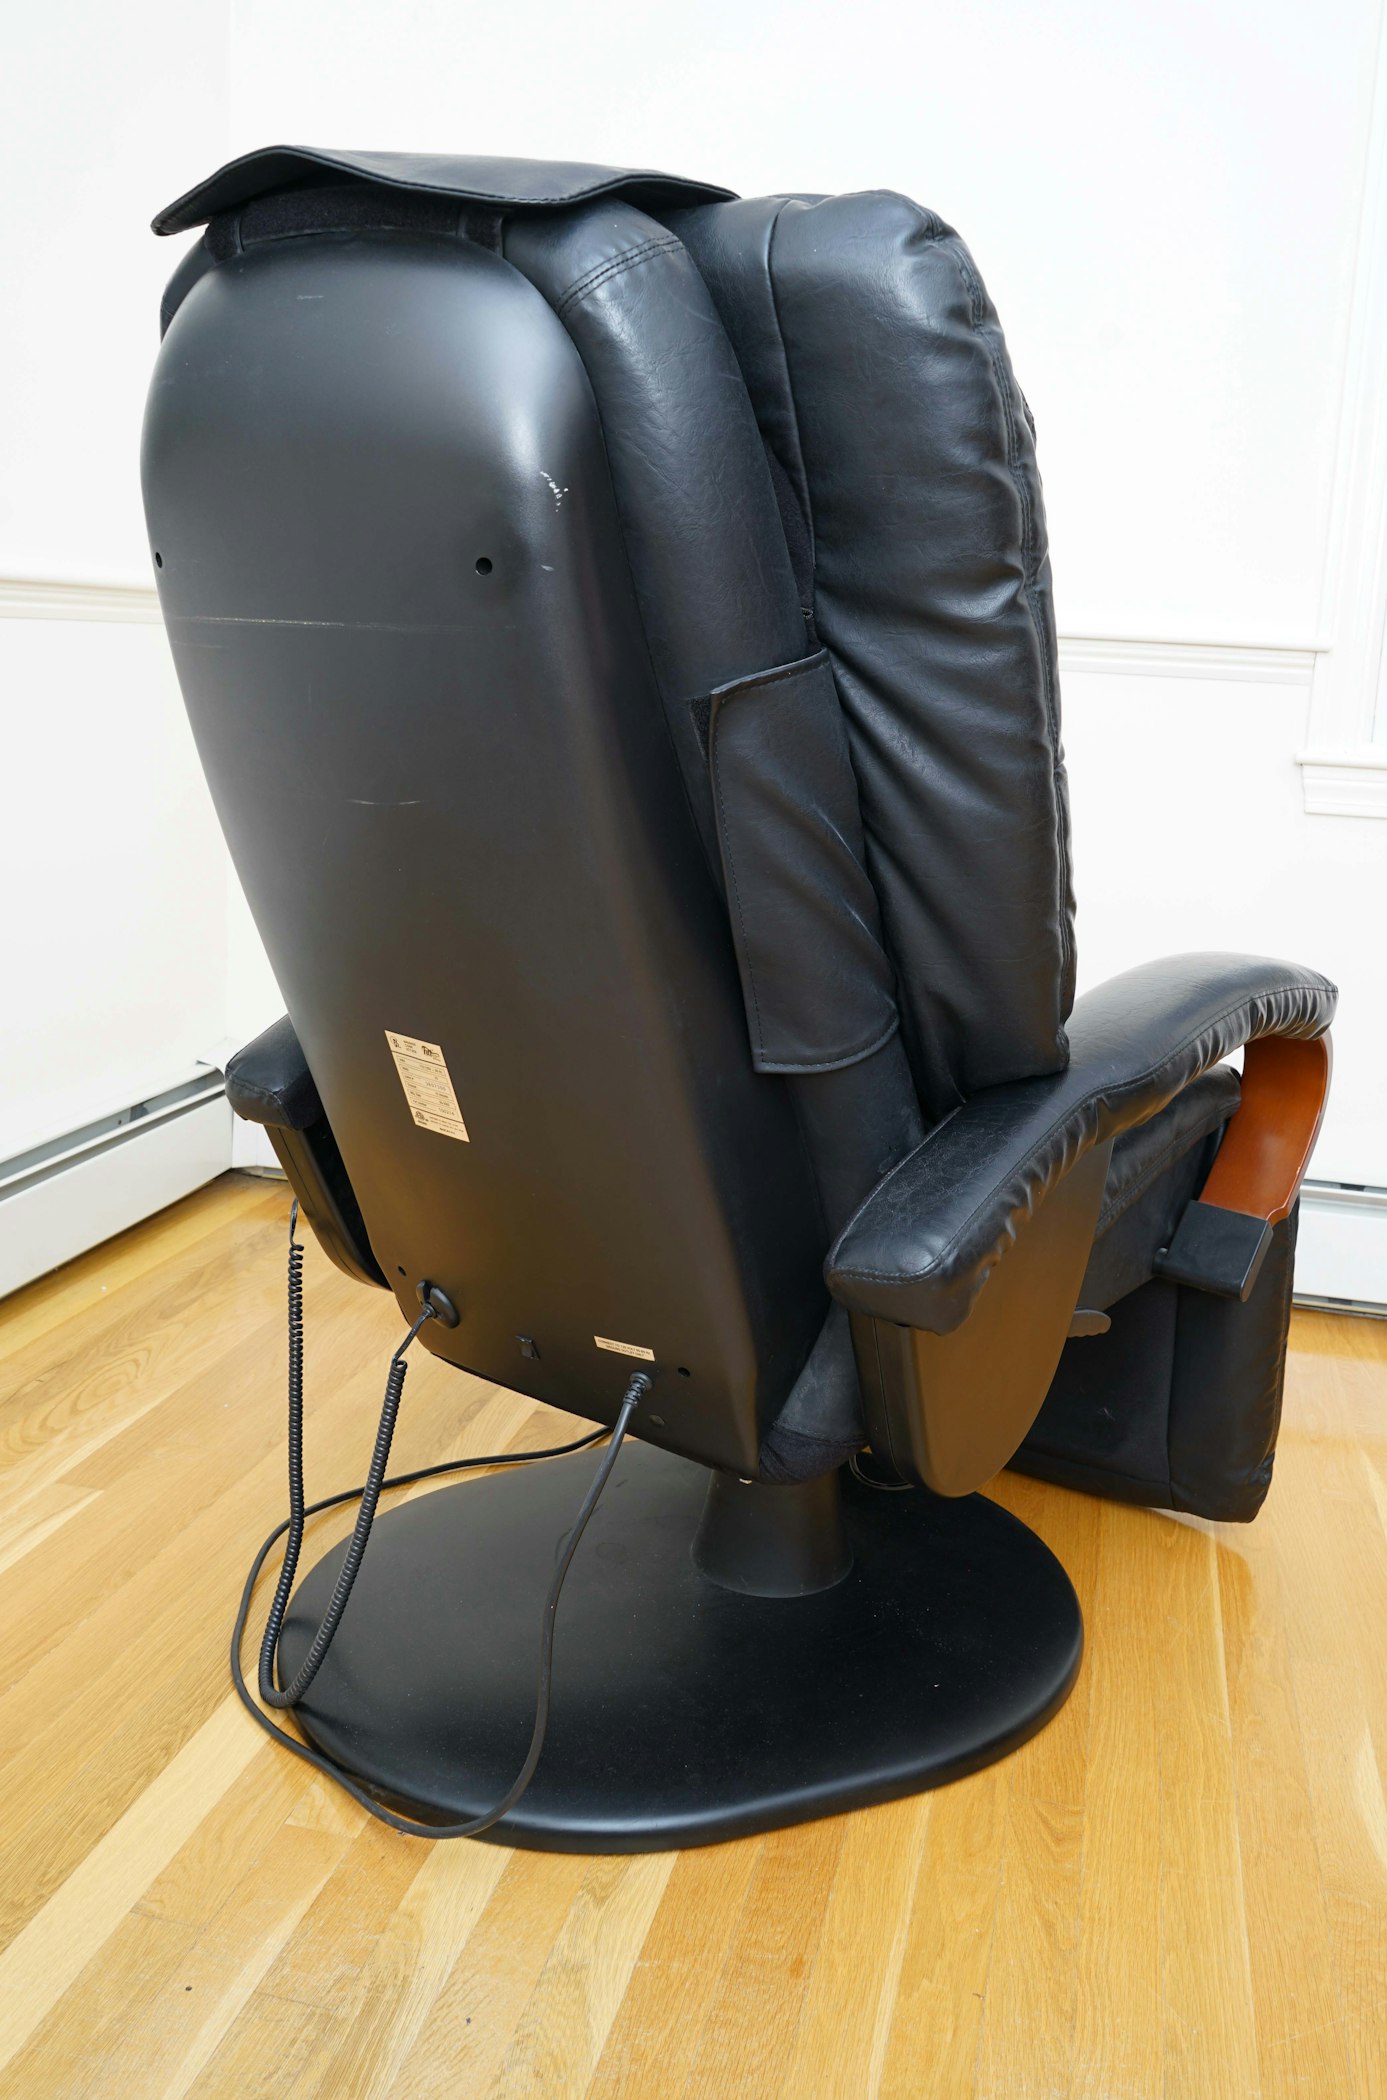 Human Touch Technology (HTT) Swivel Leather Reclining Massage Chair | EBTH